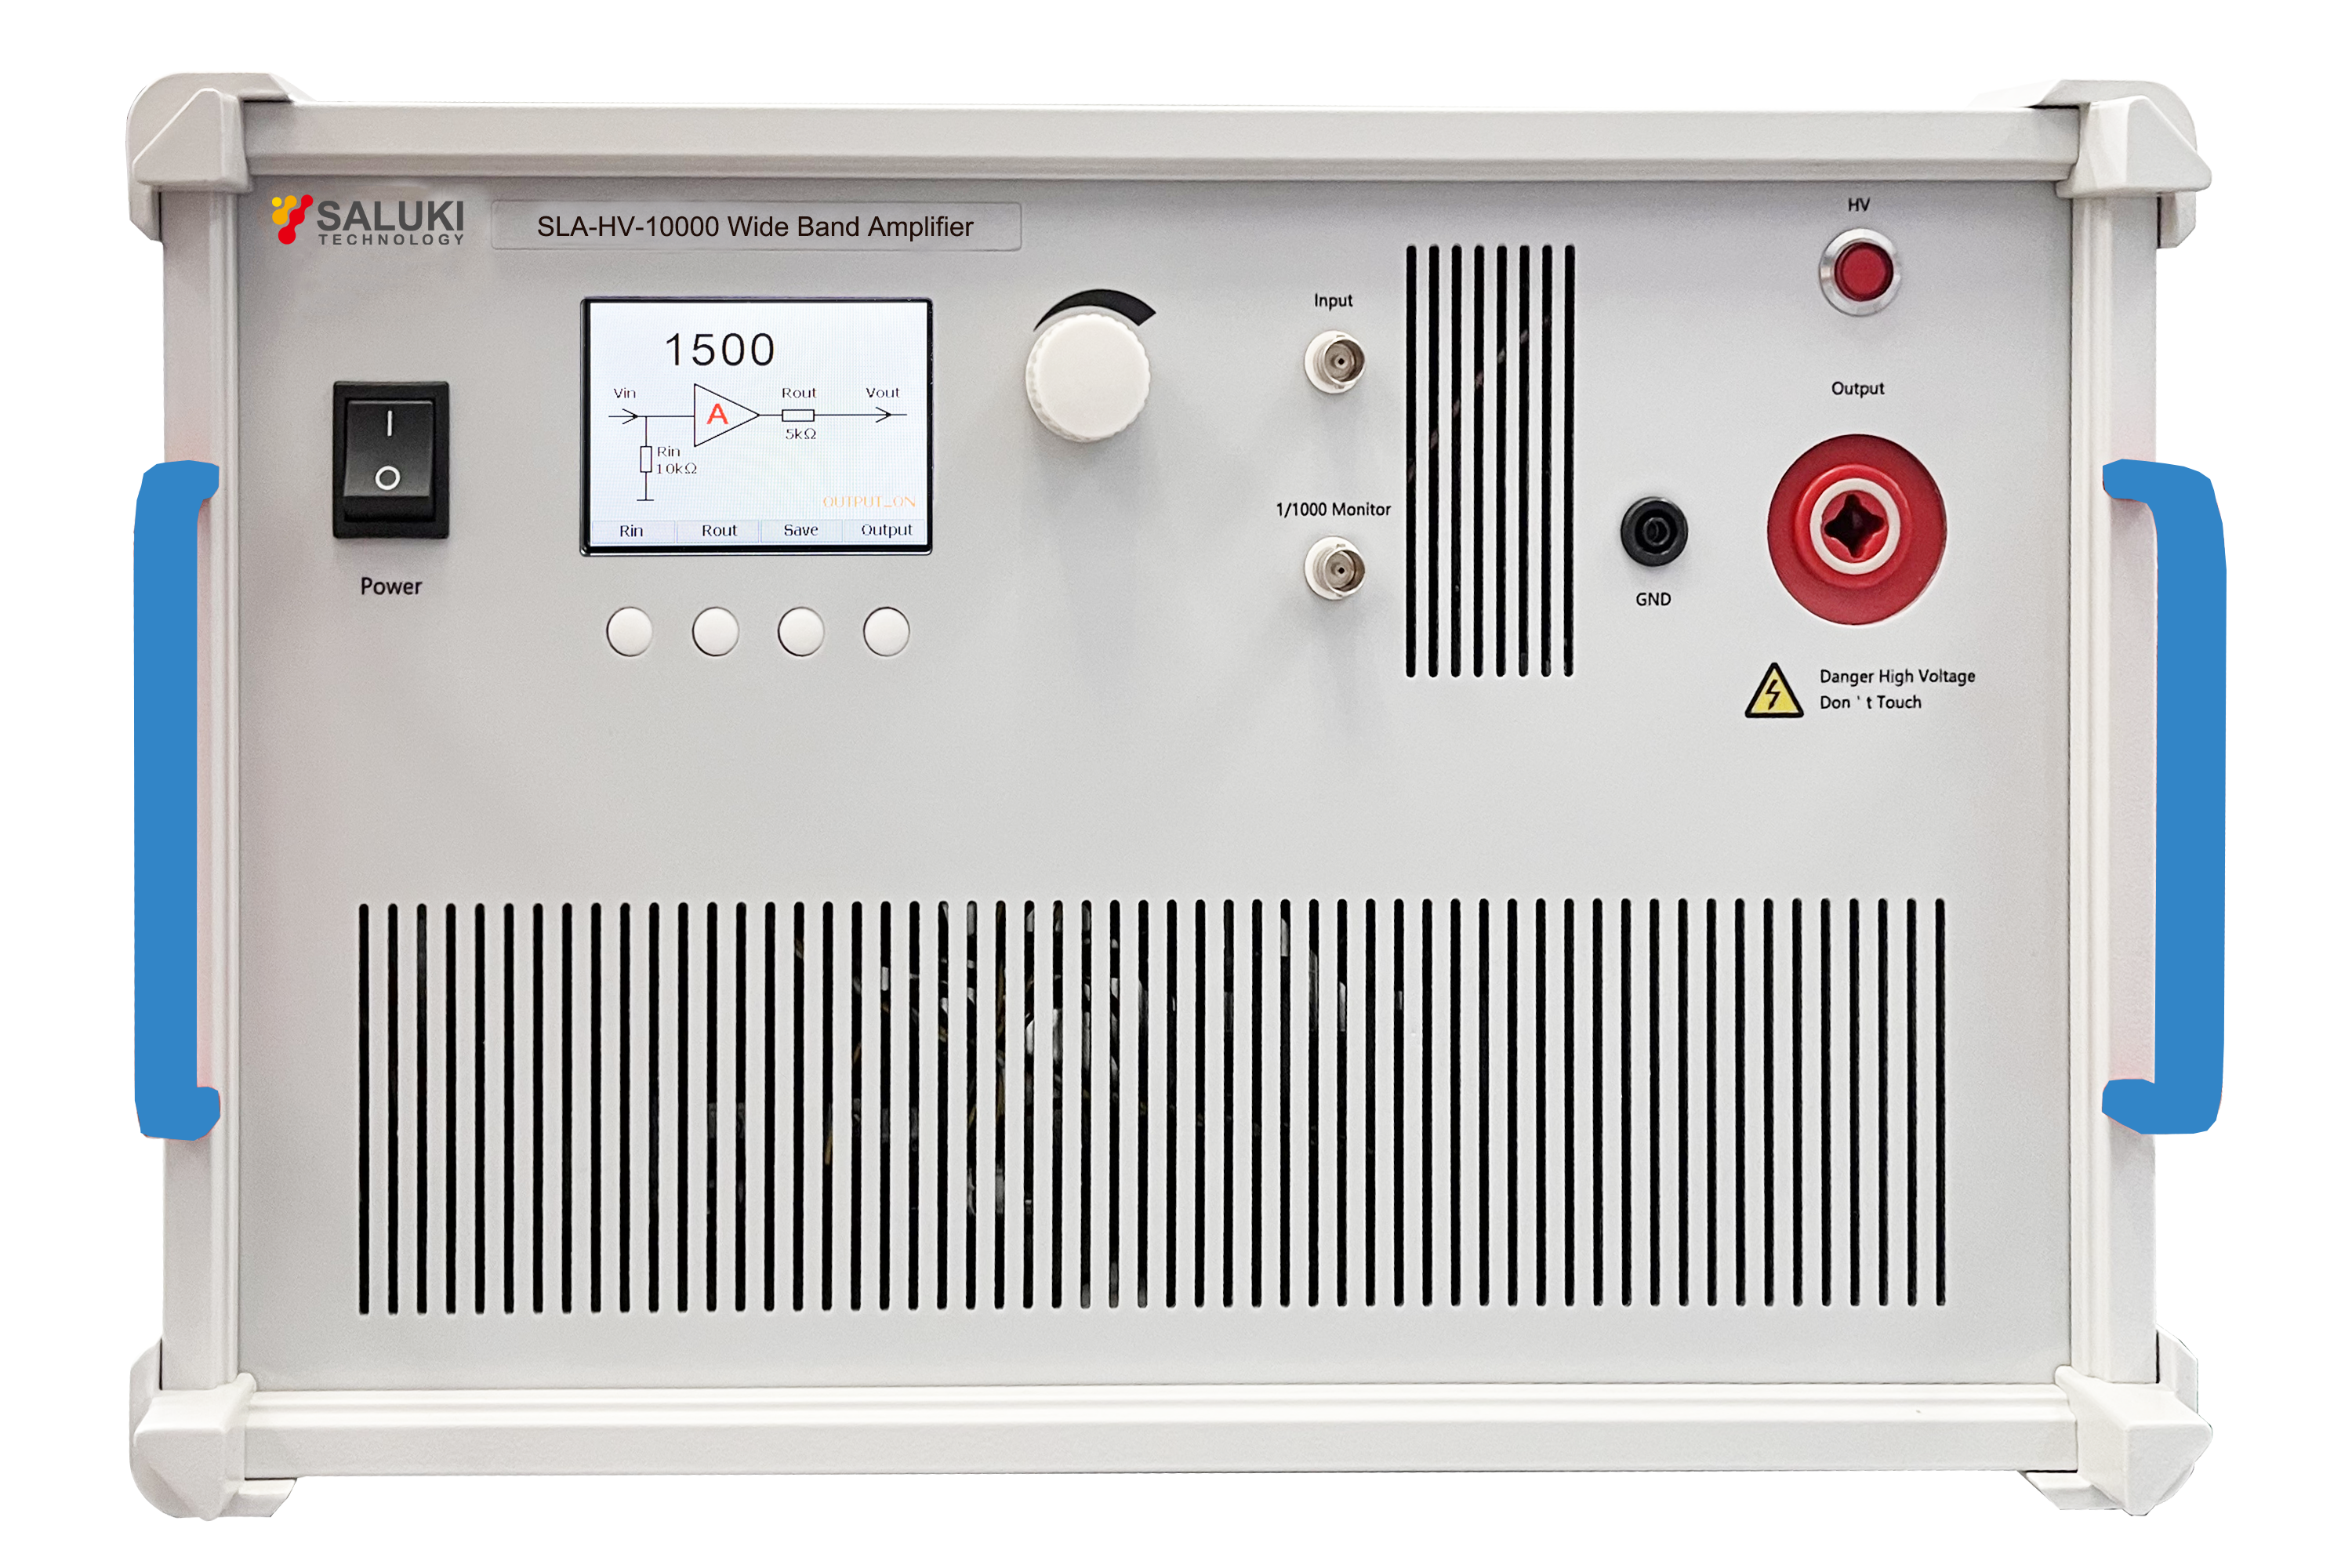 SLA-HV-10000 High Voltage Amplifier